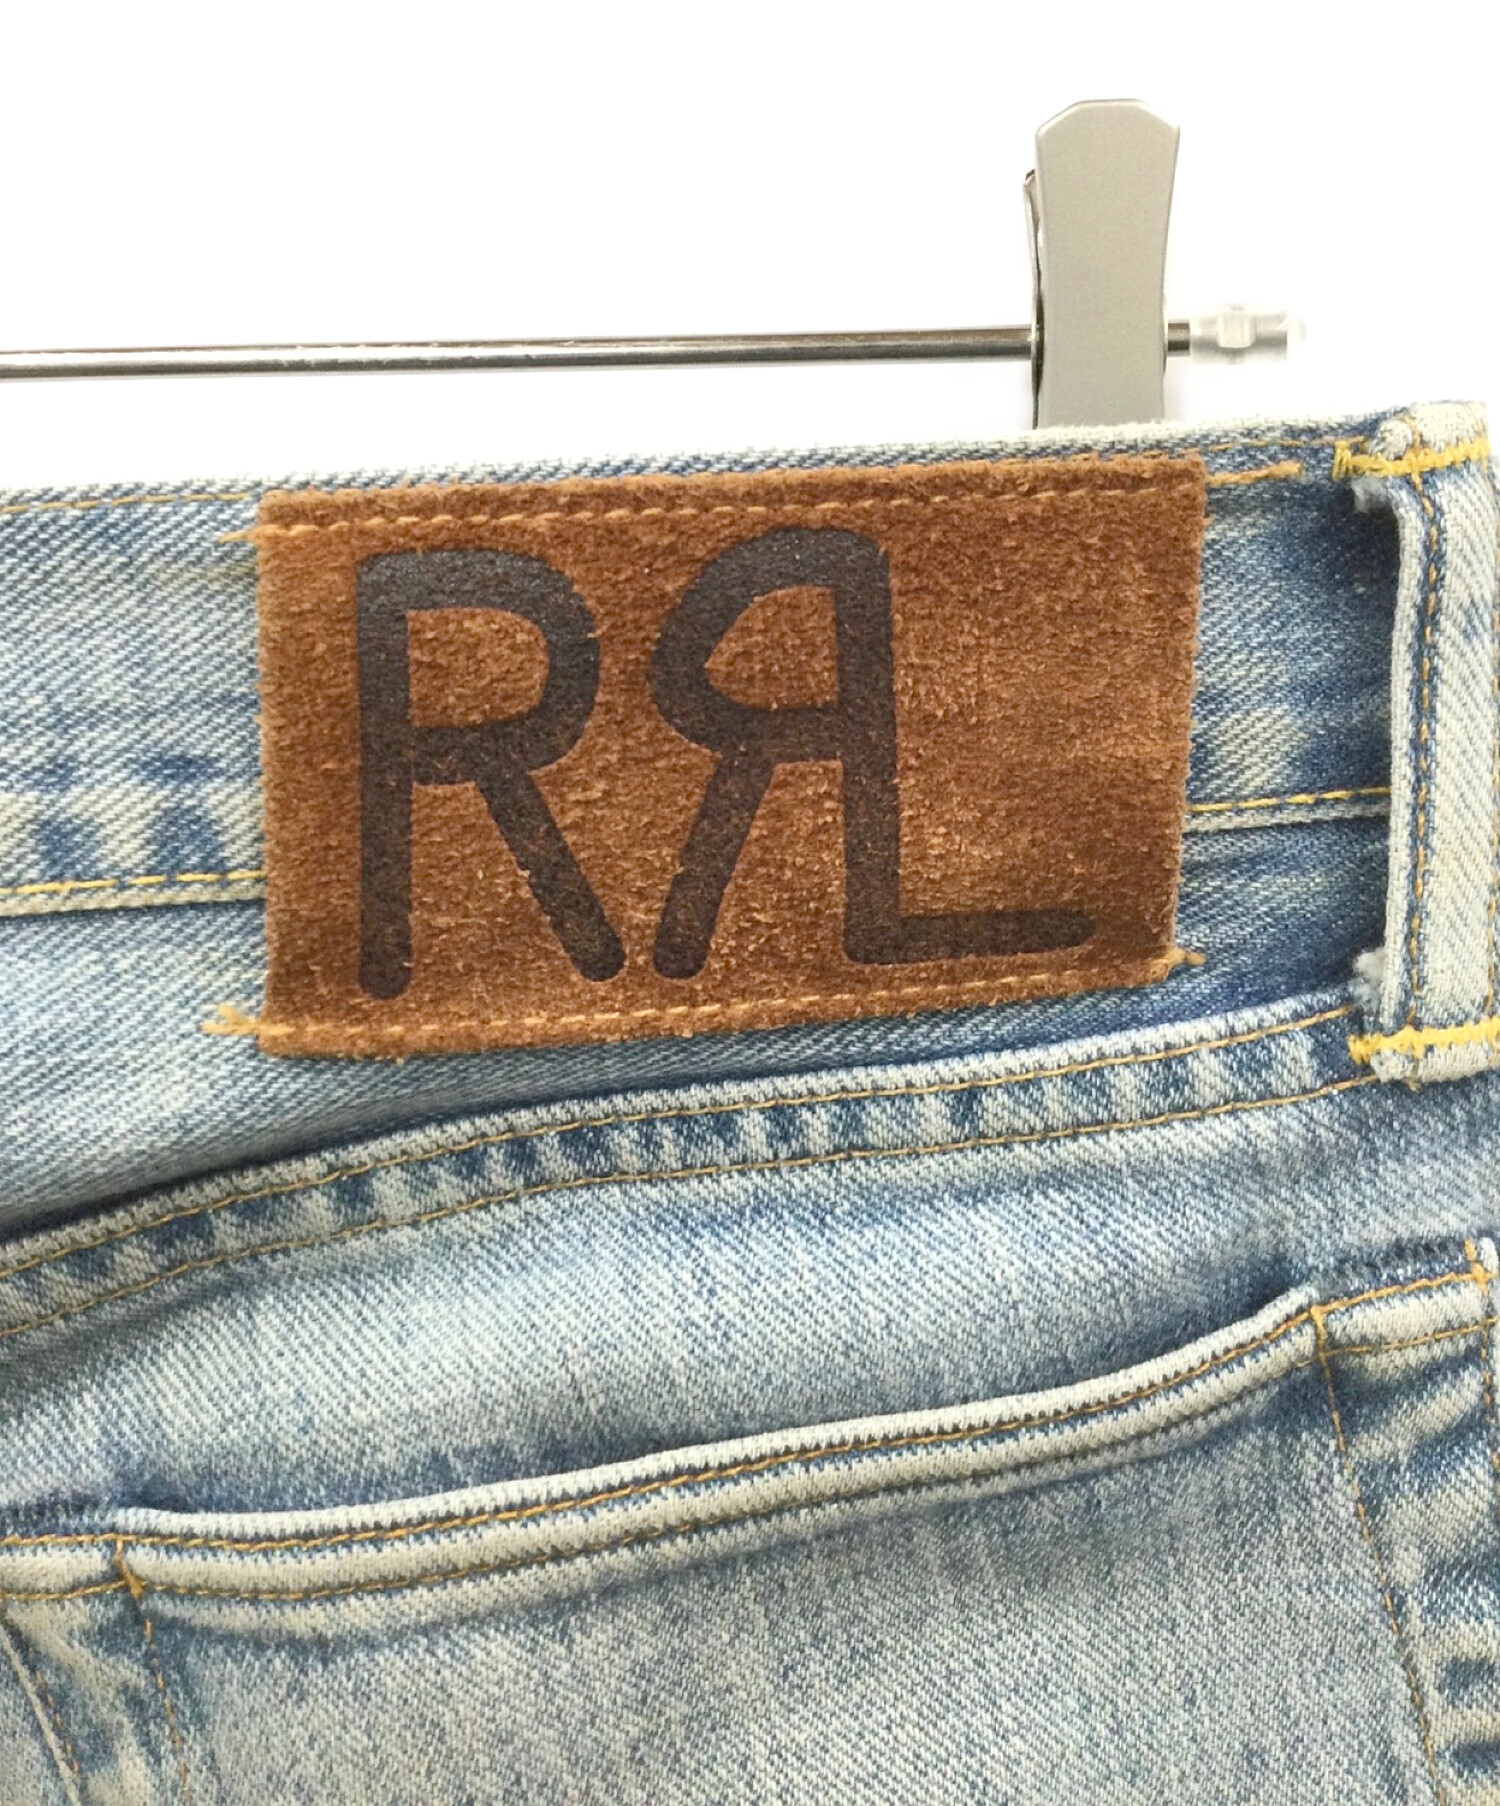 RRL (ダブルアールエル) ストレートジーンズ サイズ:30×30